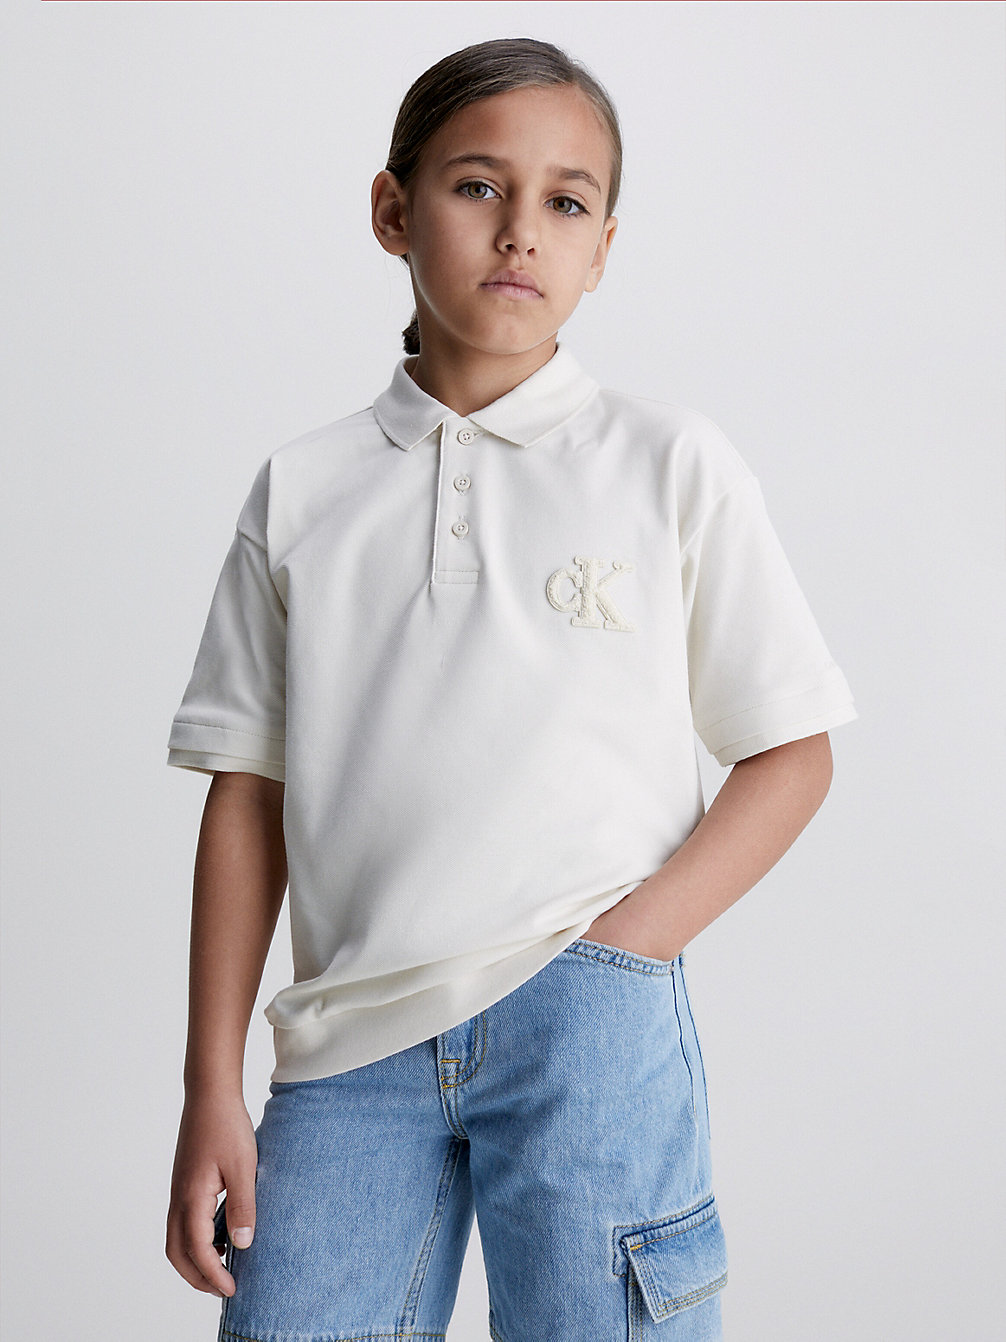 WHITECAP GRAY Poloshirt Mit Logo undefined Jungen Calvin Klein